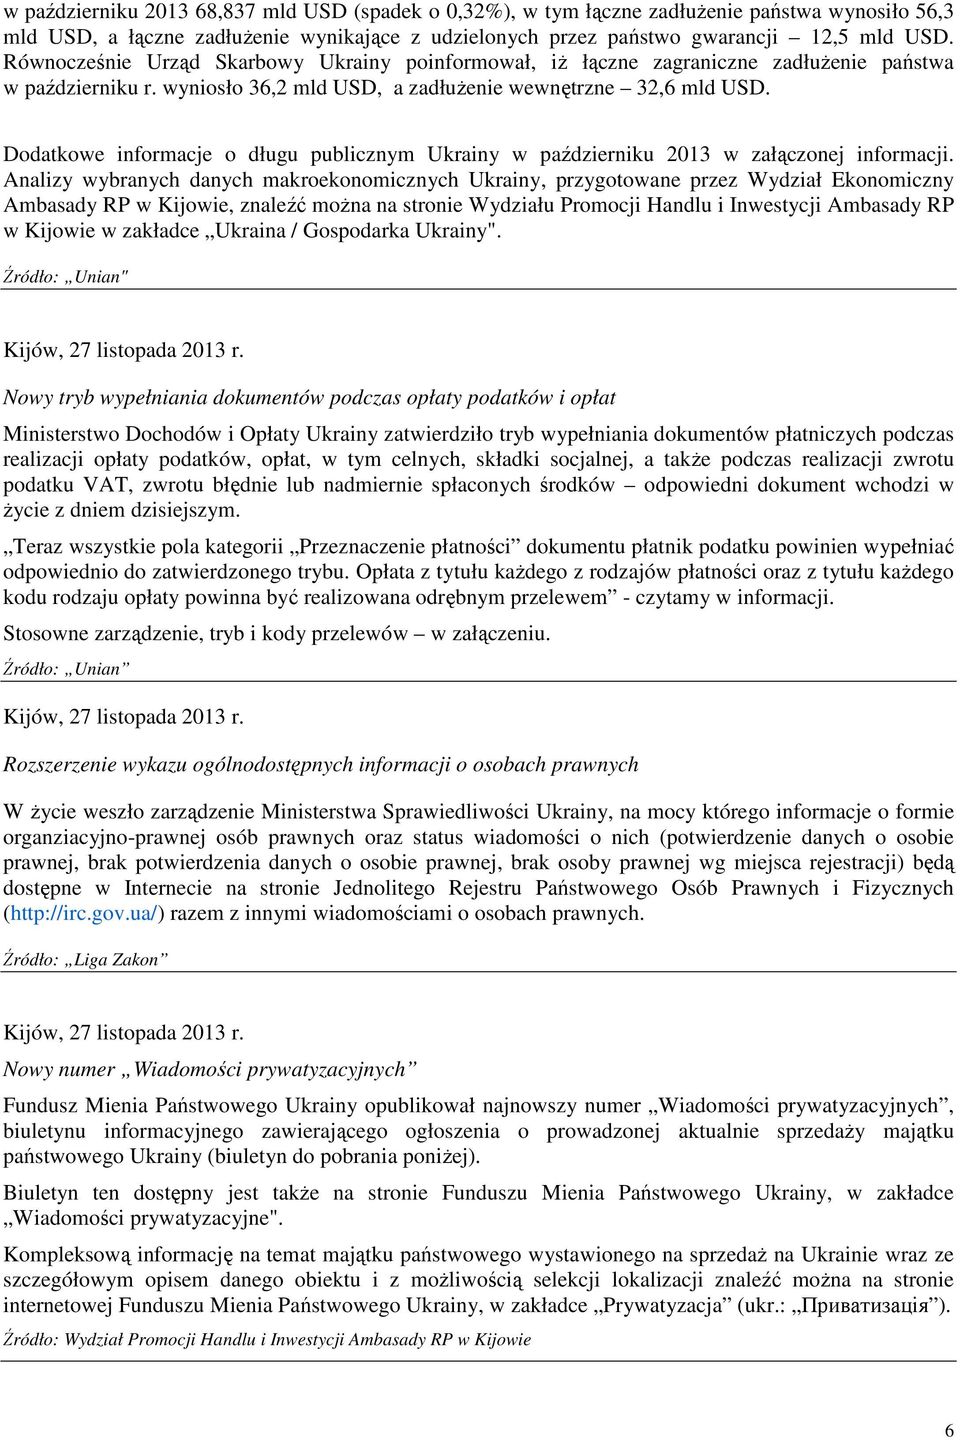 Dodatkowe informacje o długu publicznym Ukrainy w październiku 2013 w załączonej informacji.